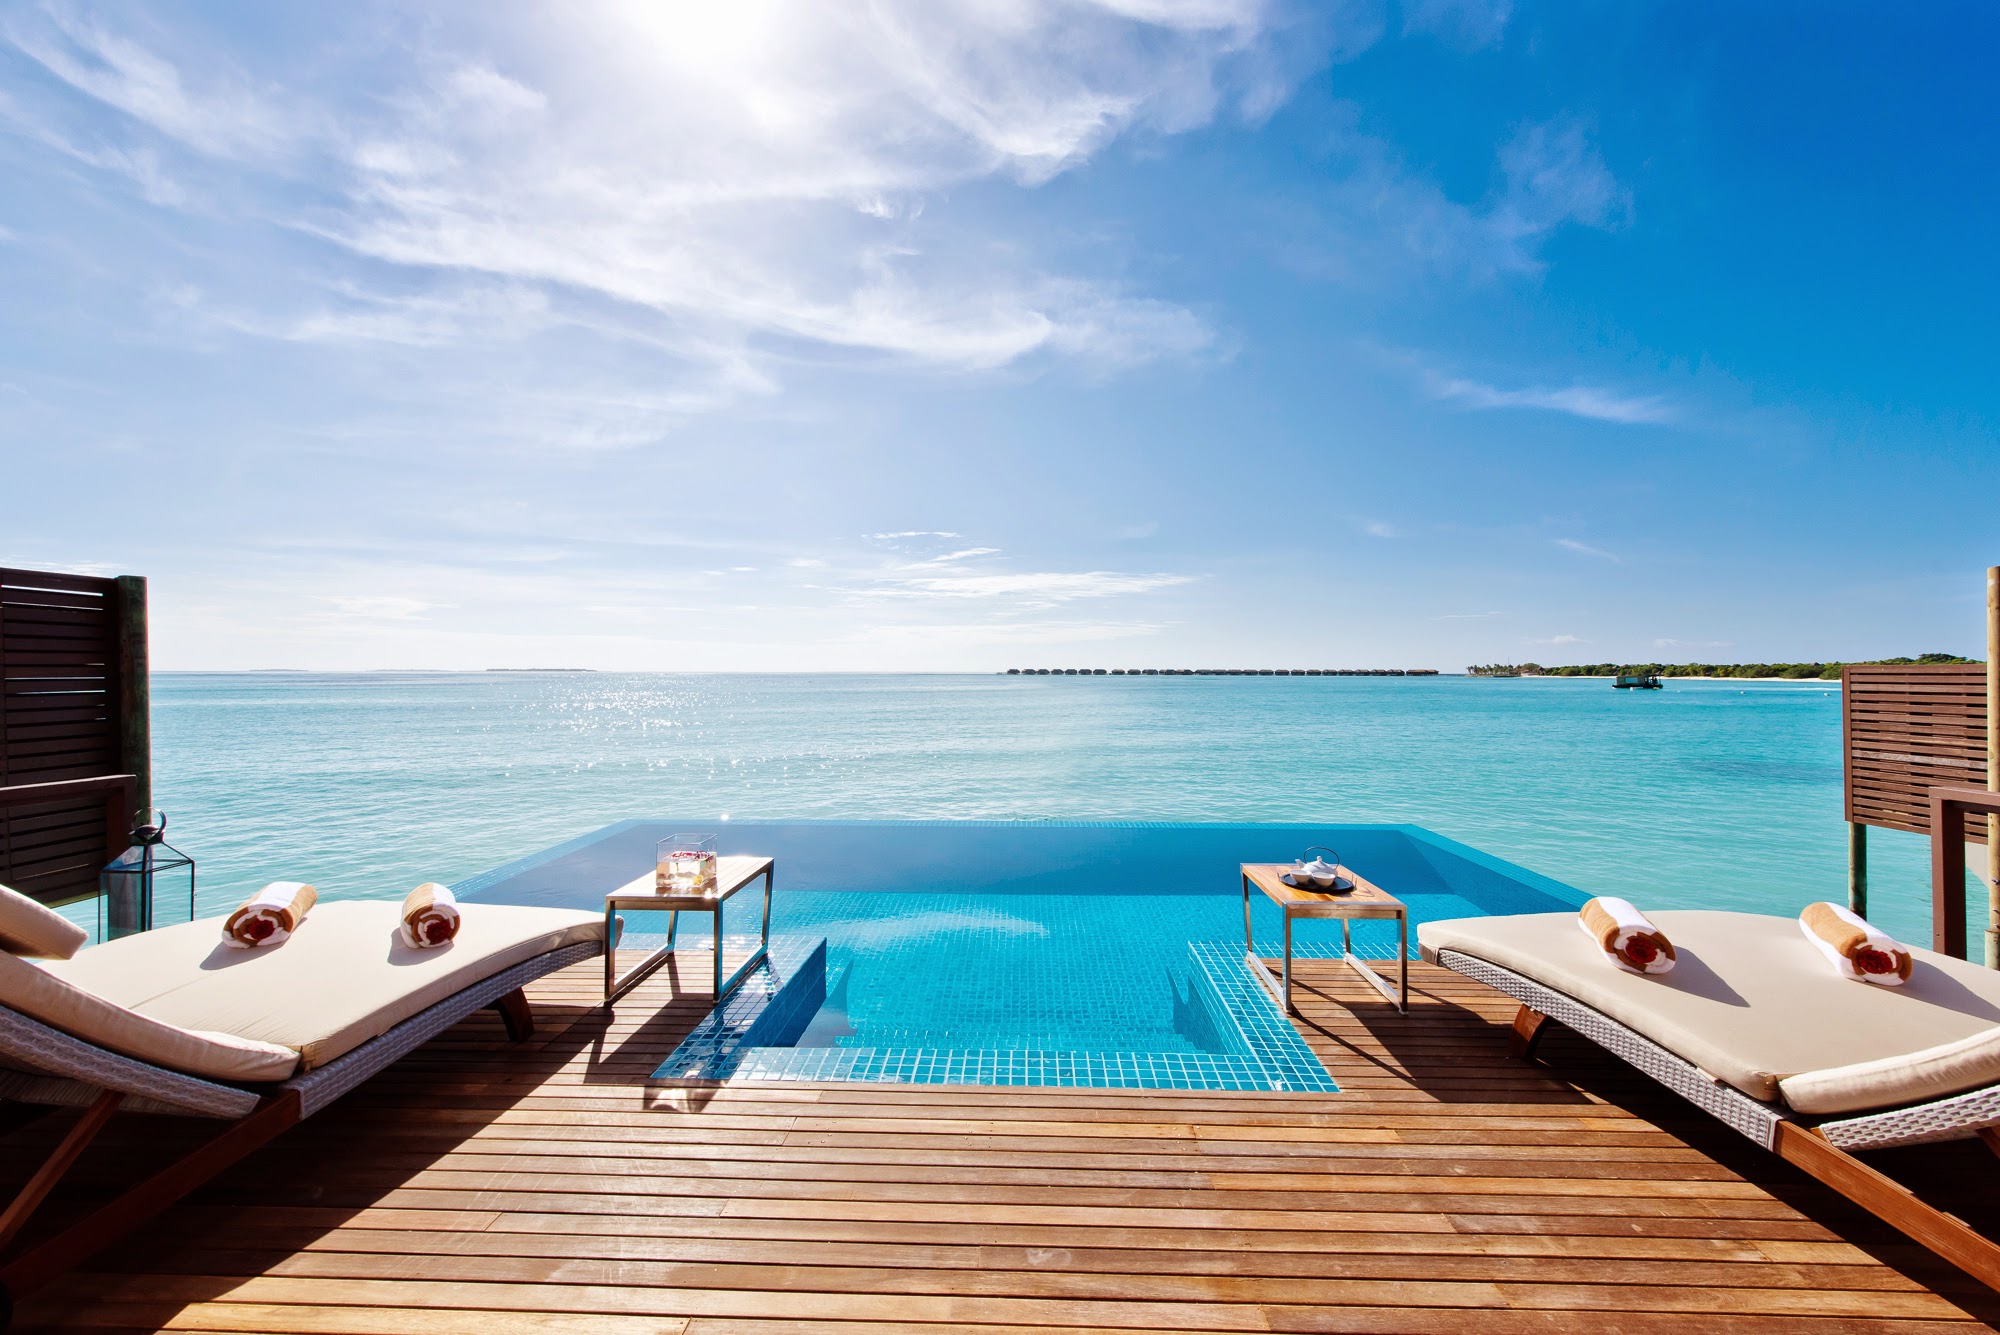 Топ 5 отелей. Мальдивы Hideaway Beach Resort Spa. Le Meridien Maldives Resort Spa 5 Мальдивы. Мальдивы оушен вилла. Инфинити бассейн Мальдивы.